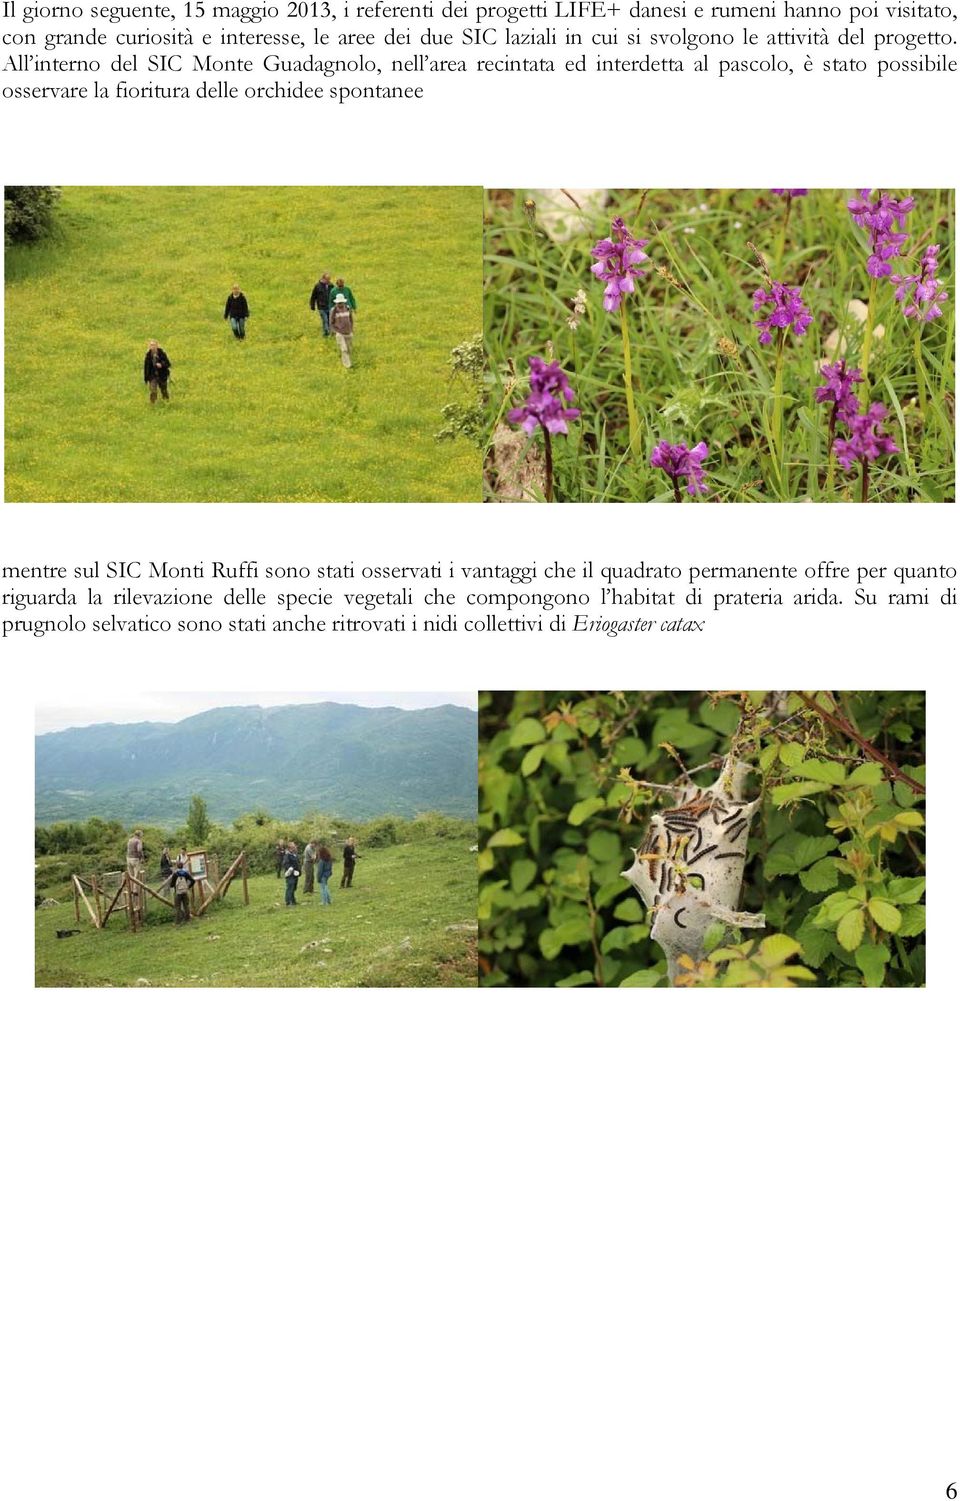 All interno del SIC Monte Guadagnolo, nell area recintata ed interdetta al pascolo, è stato possibile osservare la fioritura delle orchidee spontanee mentre sul